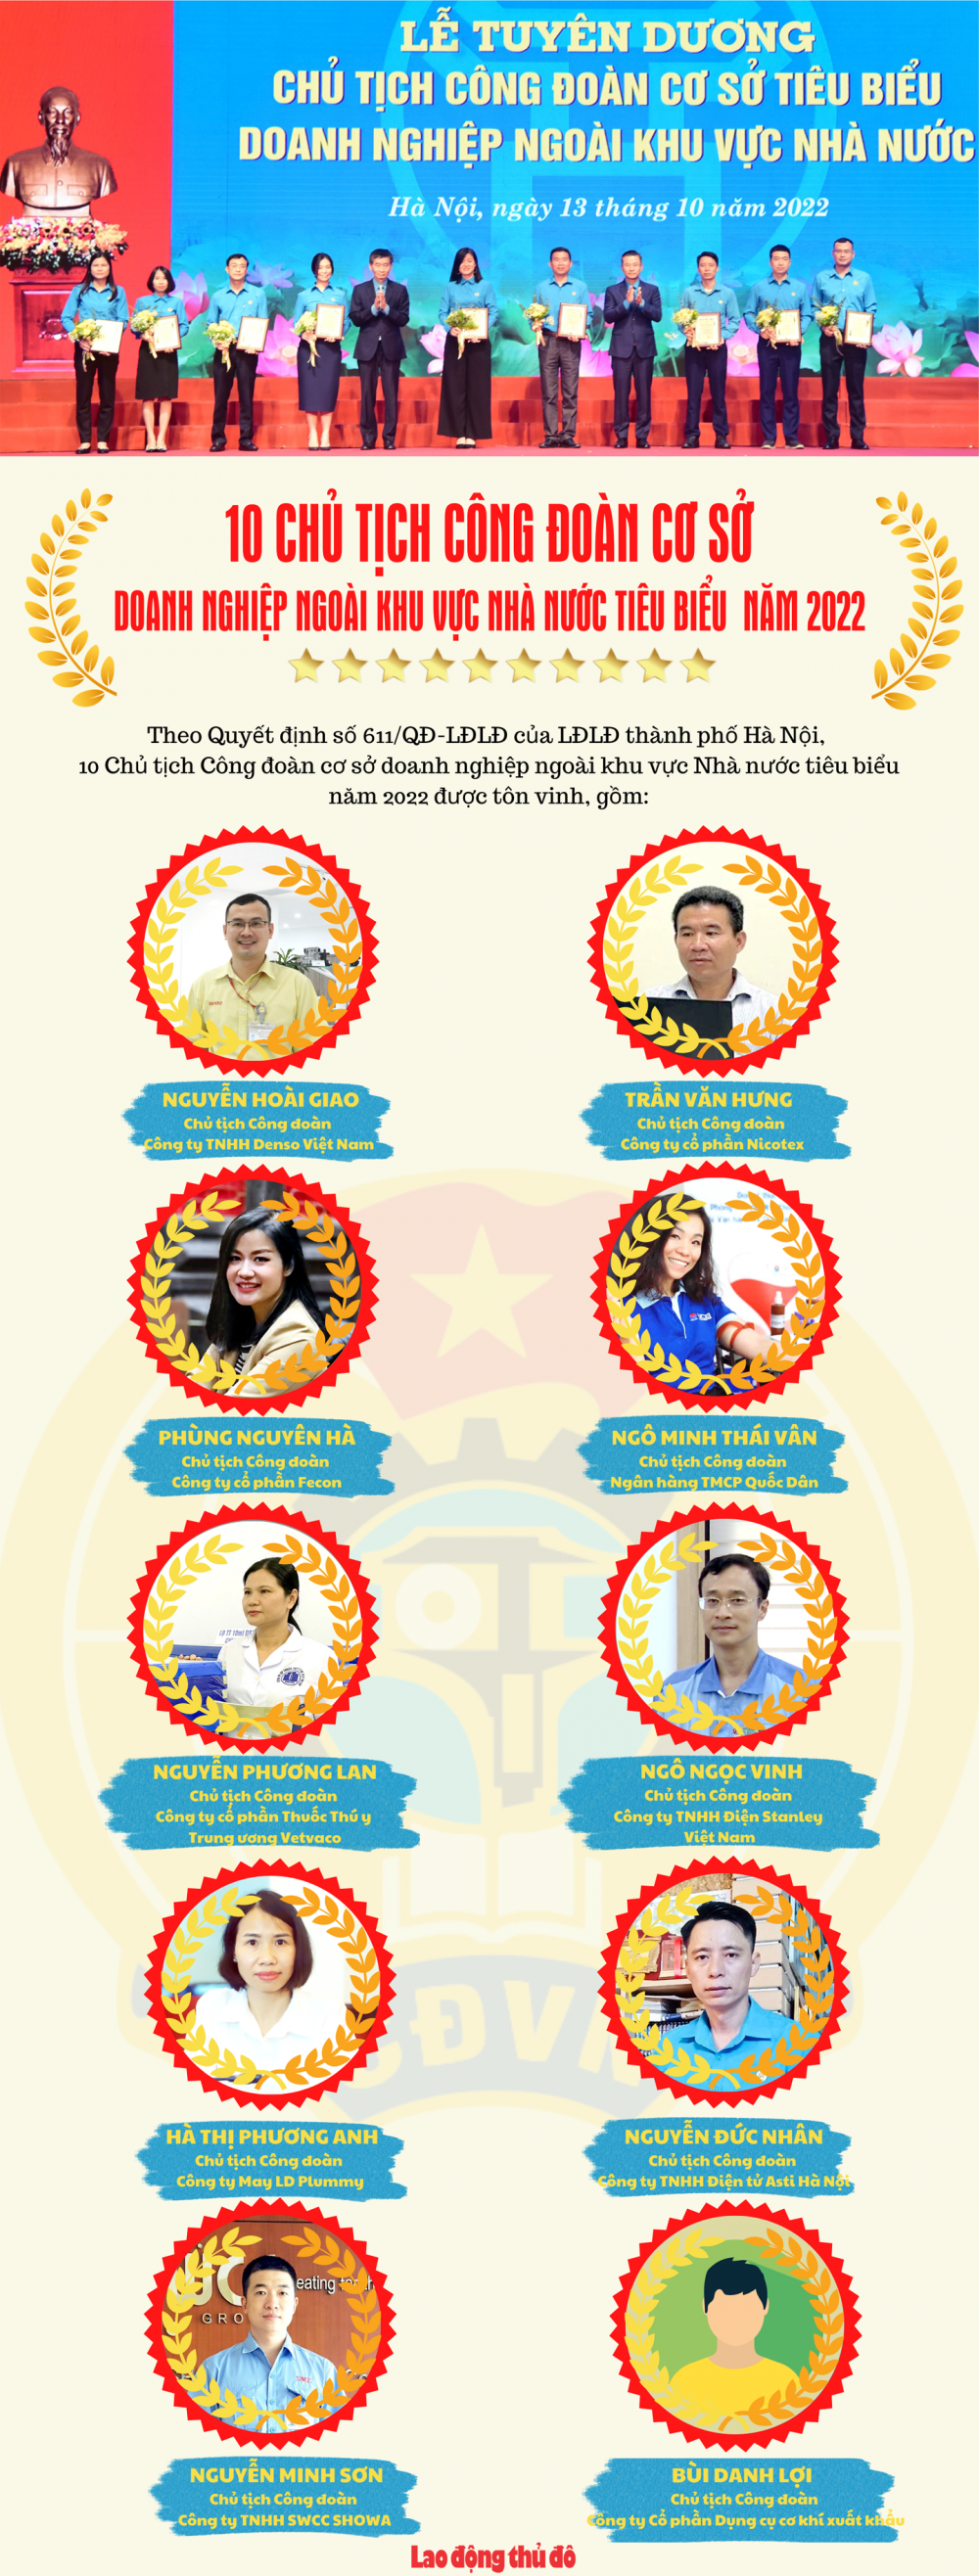 [Infographic]: 10 Chủ tịch Công đoàn cơ sở doanh nghiệp ngoài khu vực Nhà nước tiêu biểu năm 2022